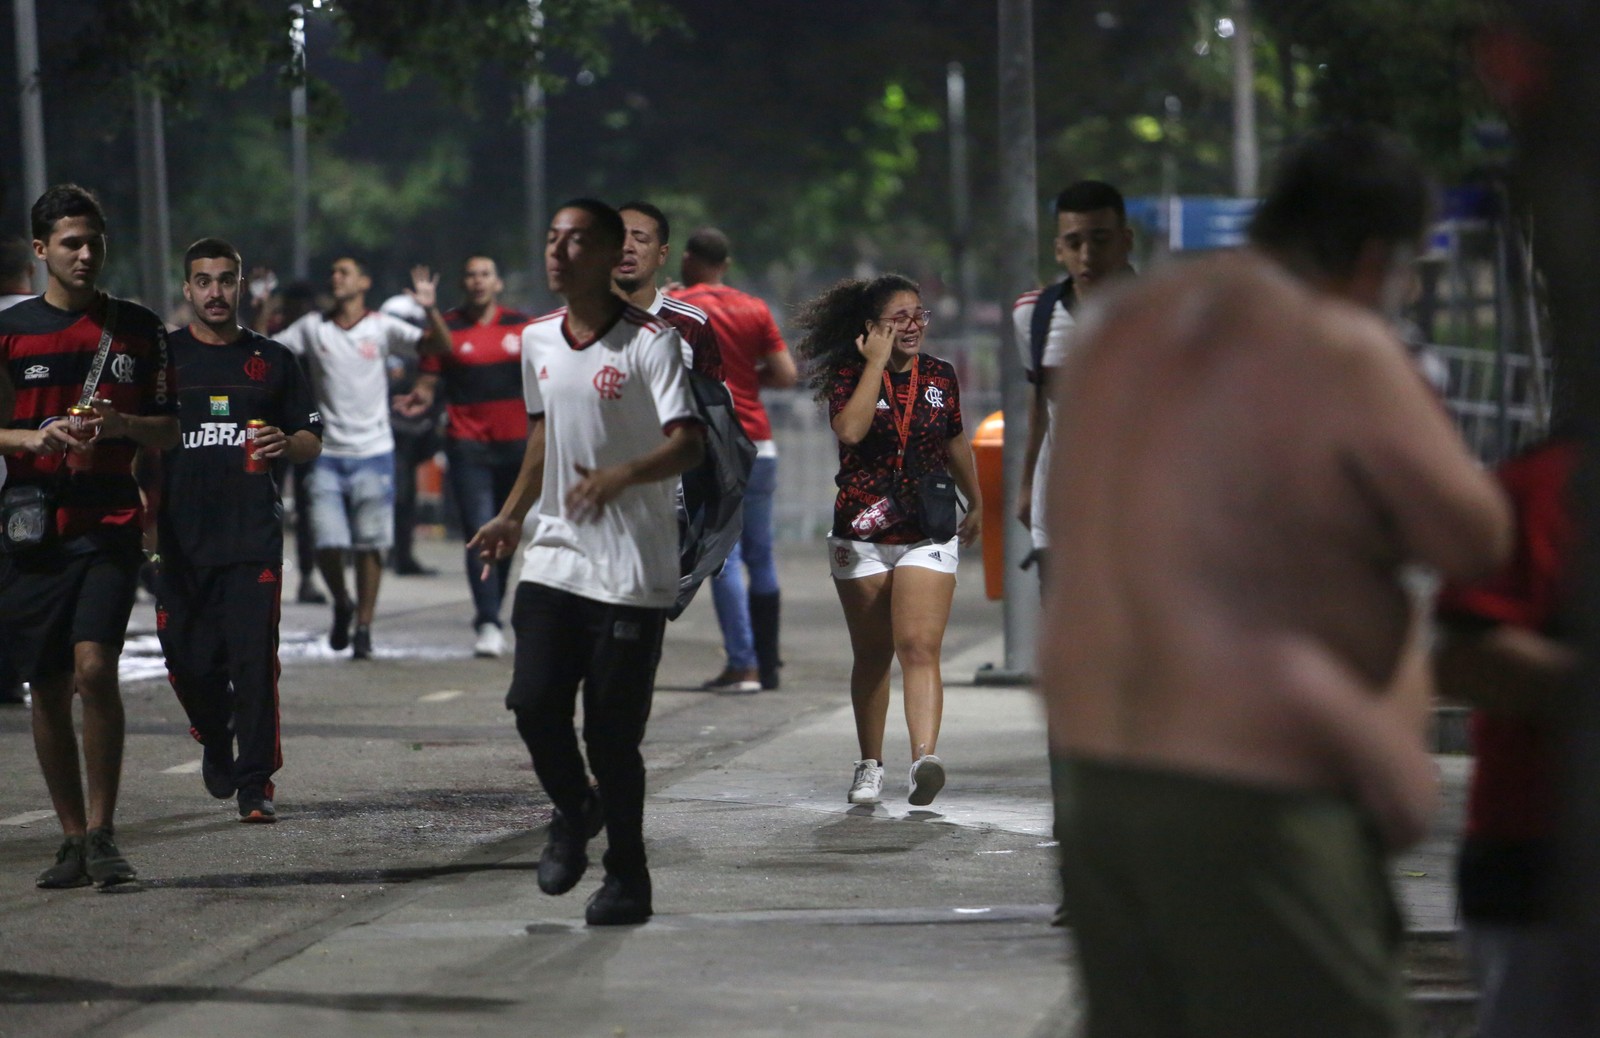 Copa do Brasil - Flamengo x Atletico MG no maracanã - Confusão na entrada do estádio — Foto: Foto Lucas Tavares / Agência O Globo